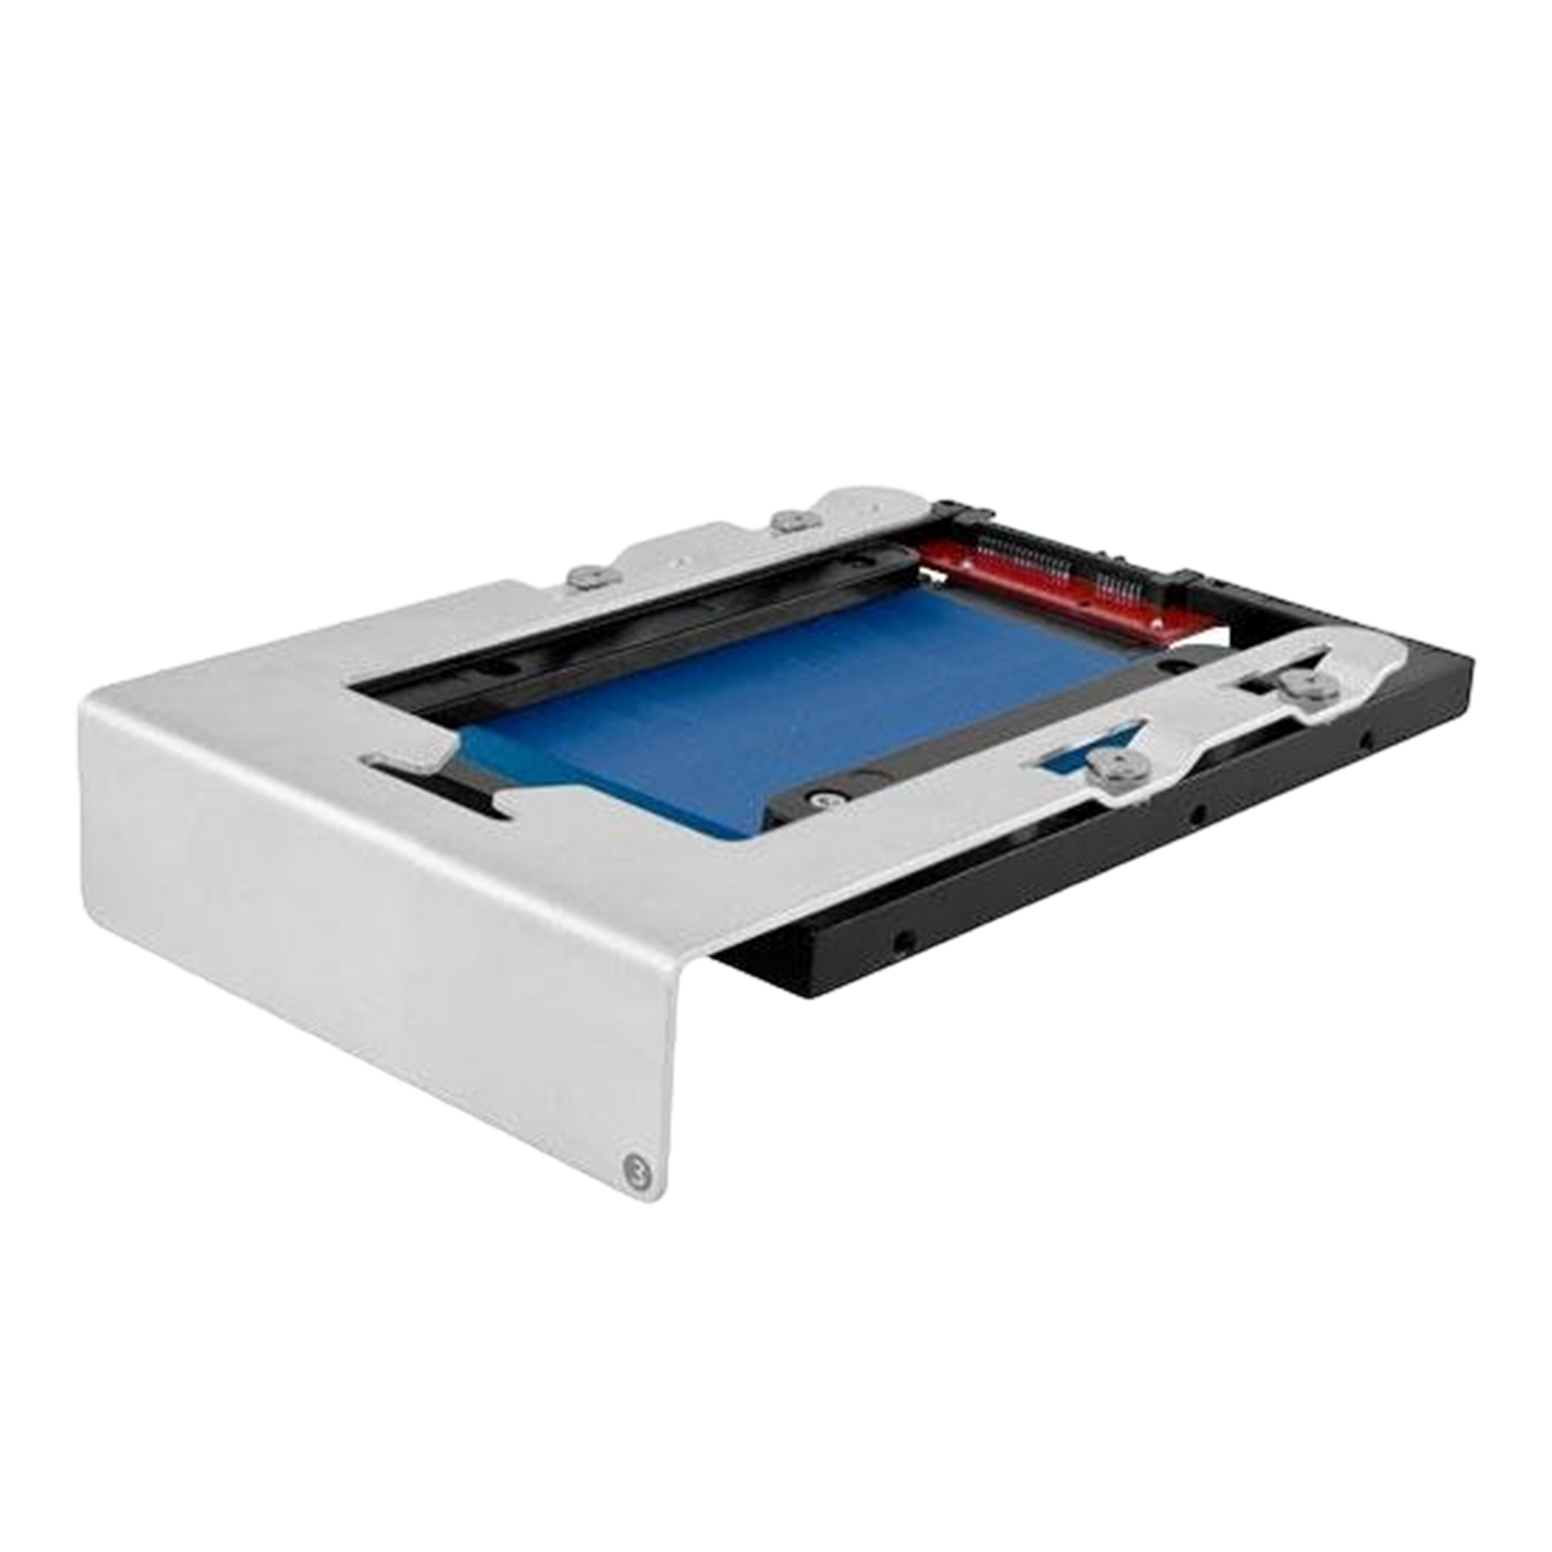 OWC 2TB Mercury Extreme 2.5" SSD & NewerTech AdaptaDrive 3.5” Drive Bay Adapter Bundle Kit